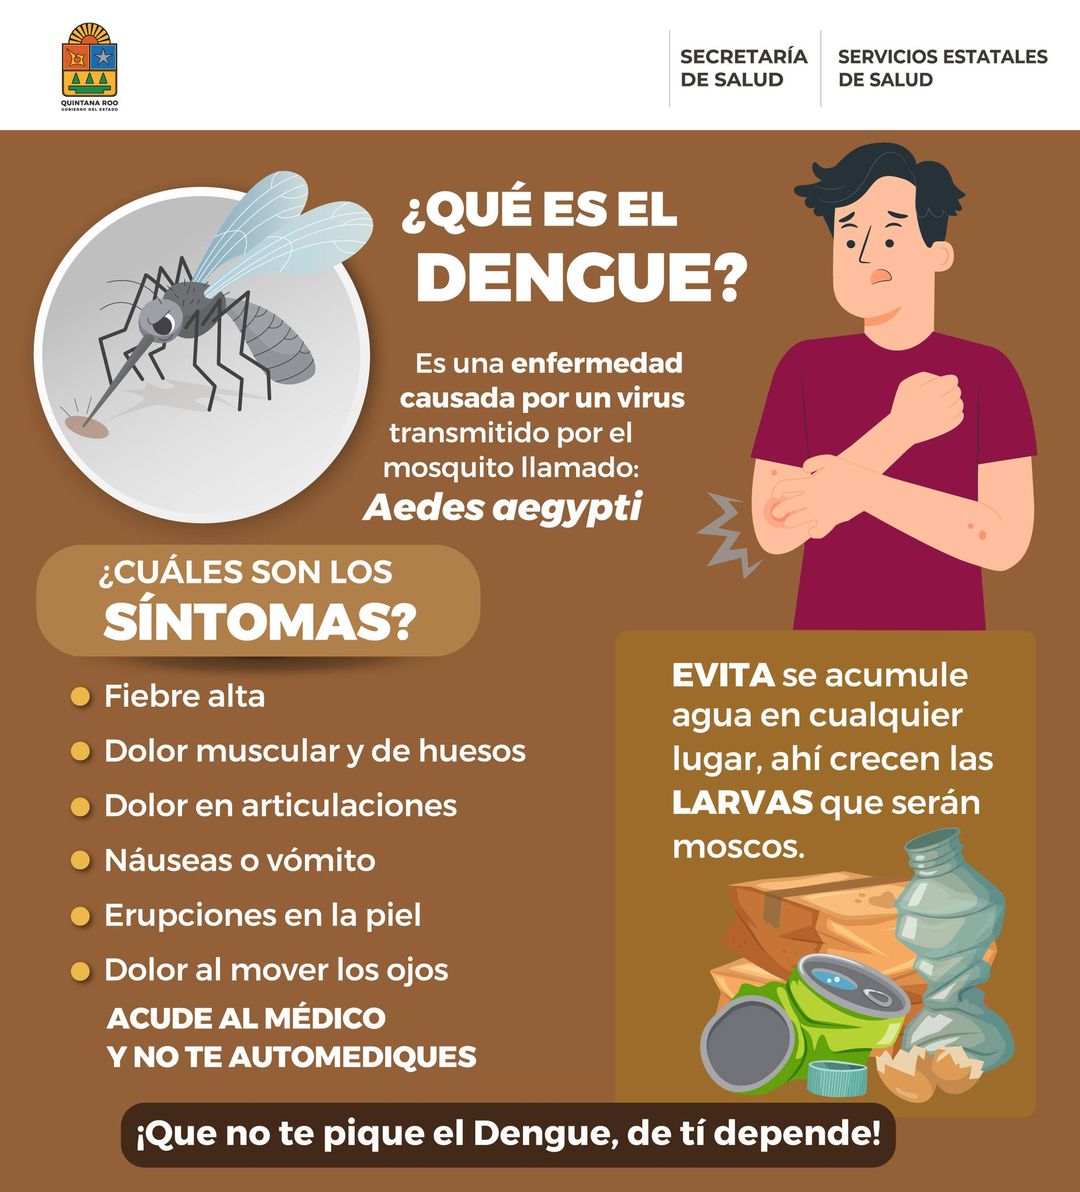 El dengue es una enfermedad prevenible, la mayoría de los factores que facilitan su propagación son controlables mediante prácticas de prevención individual y comunitaria.